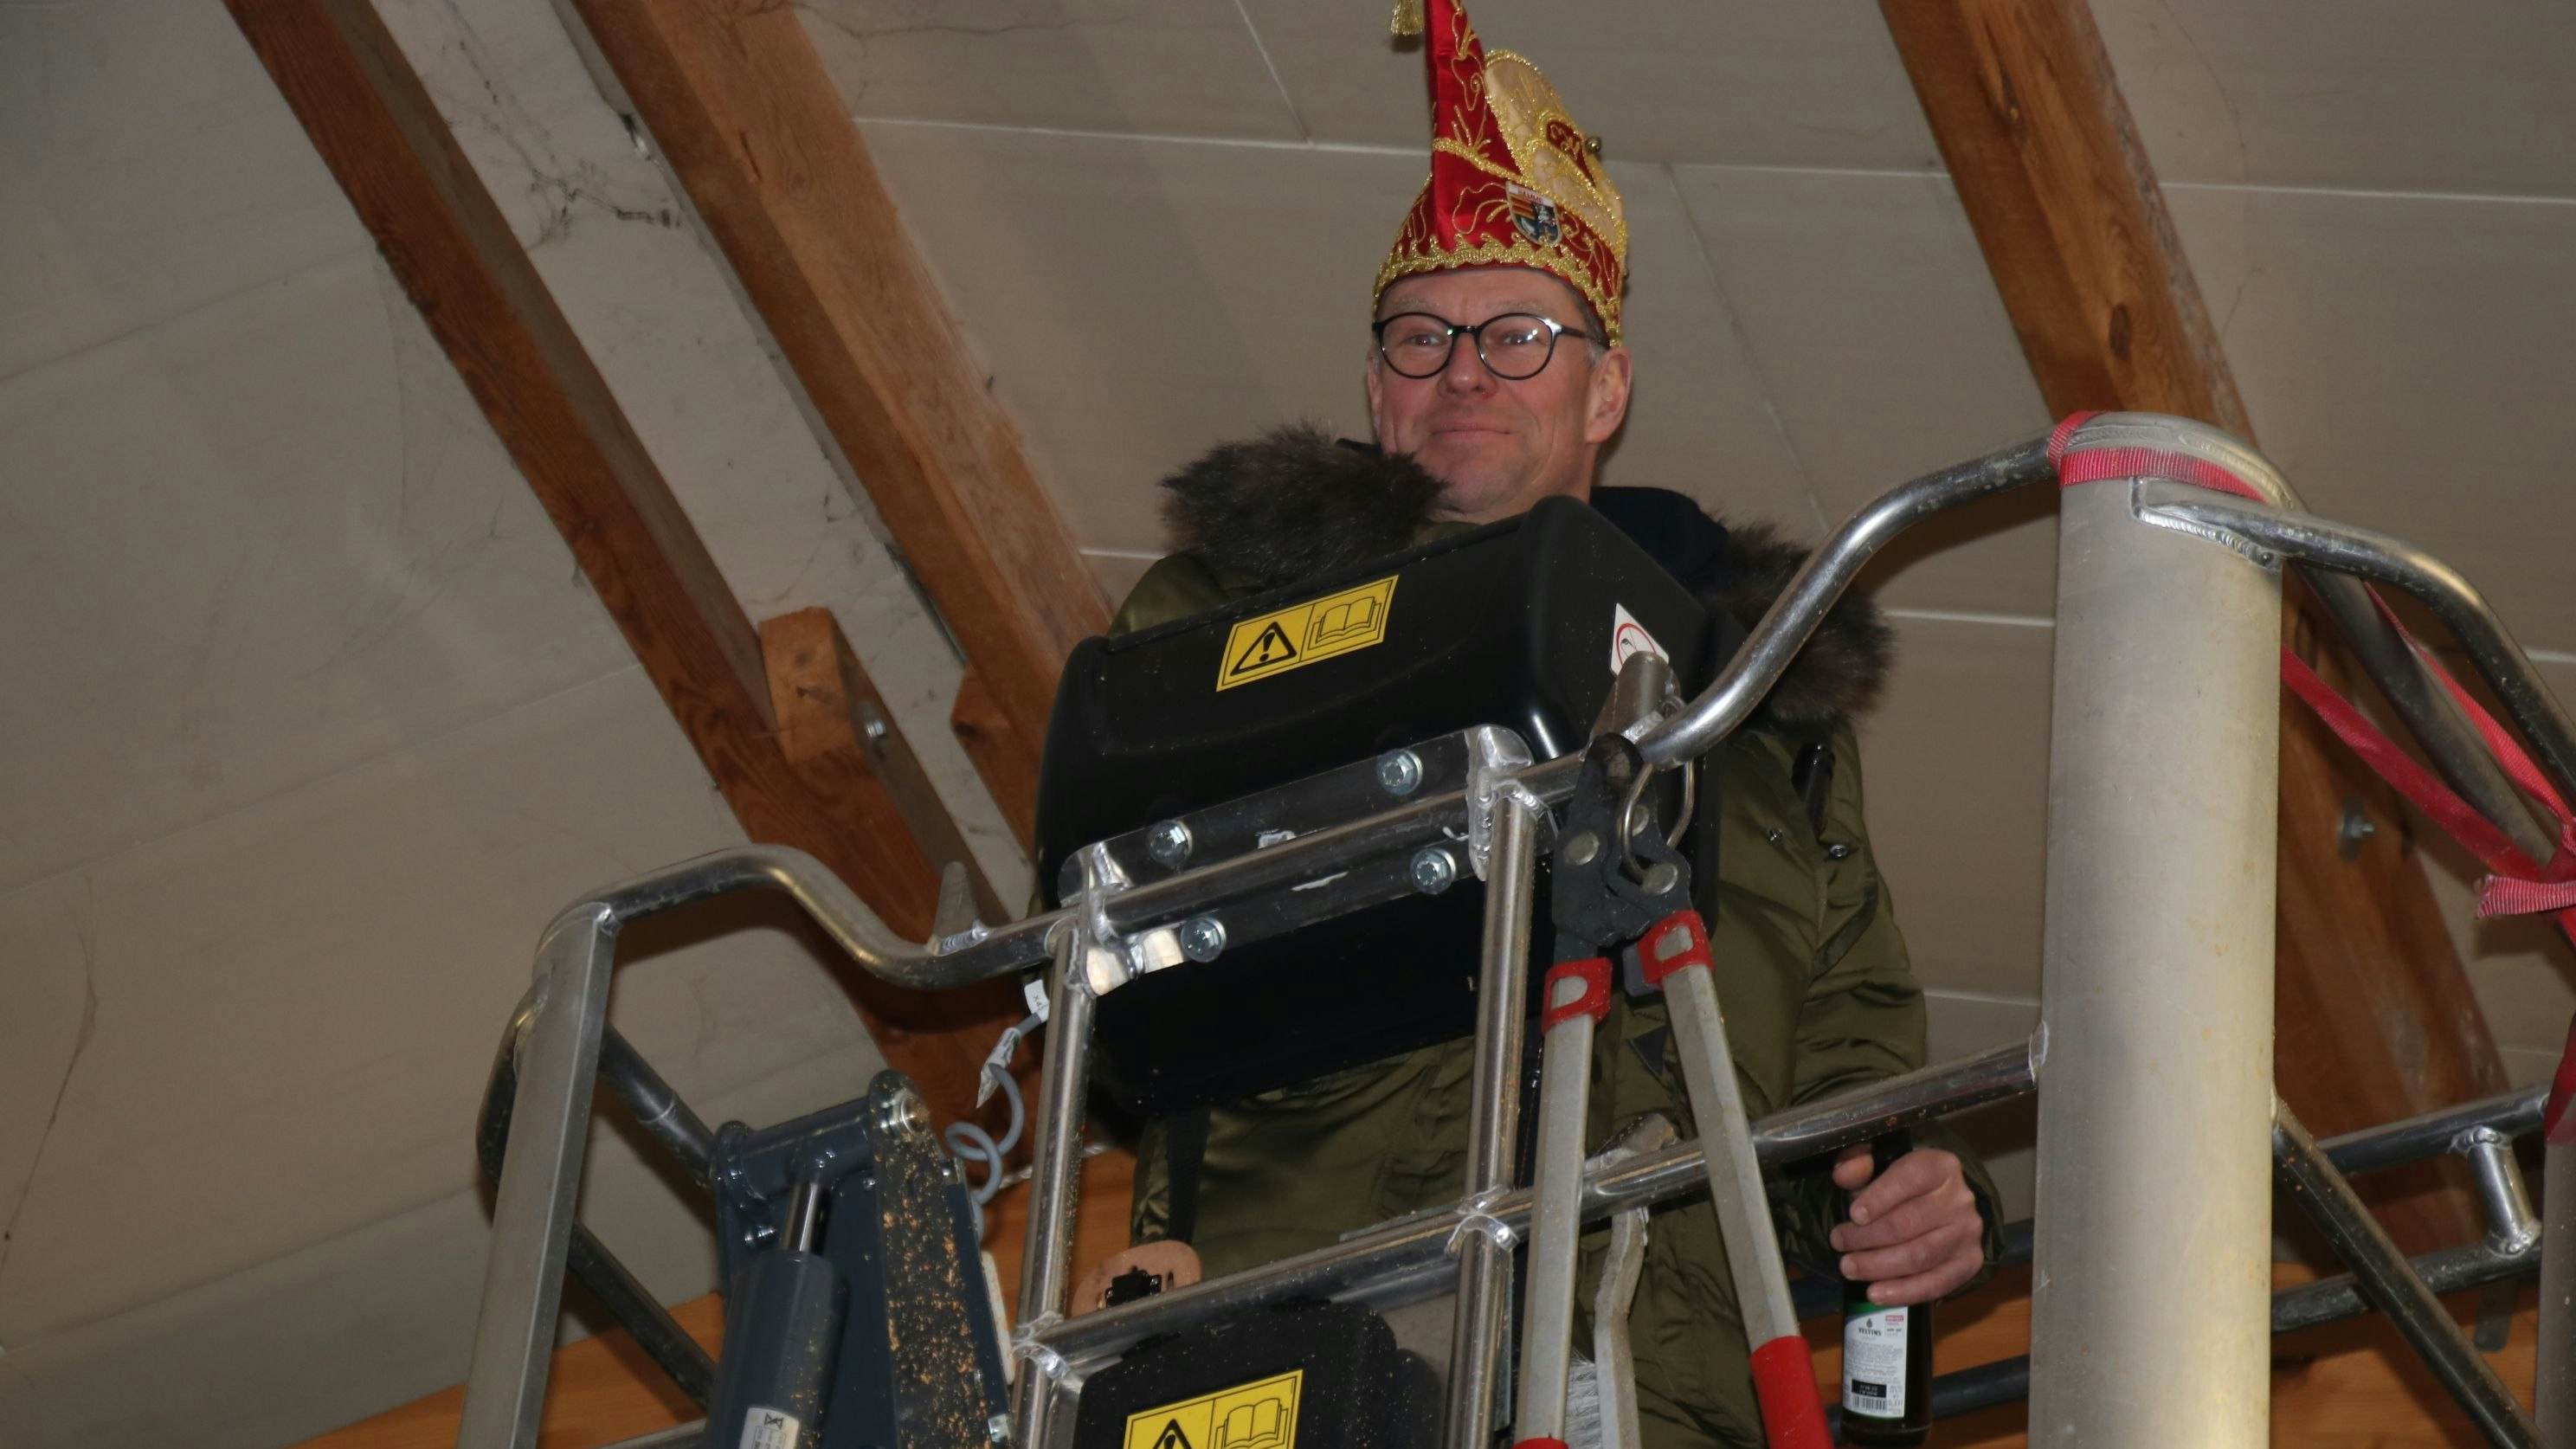 Hoch hinaus per Safety-Lift: Sascha von Wahlde nutzte moderne Technik für das Anbringen eines Prinzenaufklebers. Foto Lammert